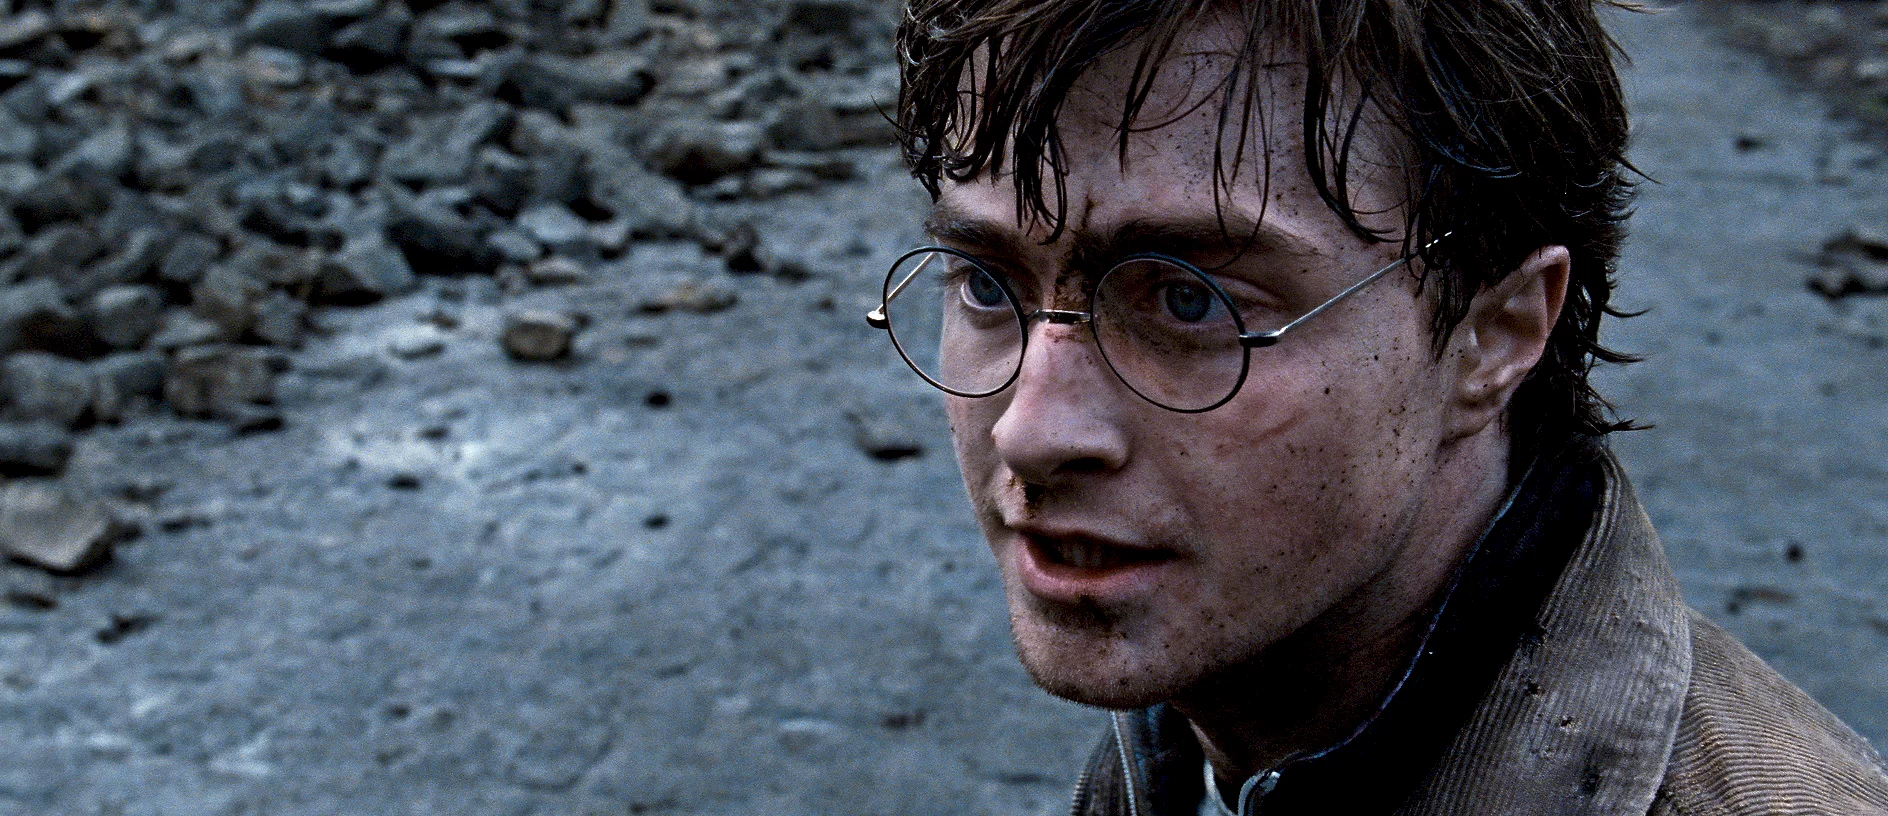 Photo du film : Harry Potter et les reliques de la mort - Partie 2